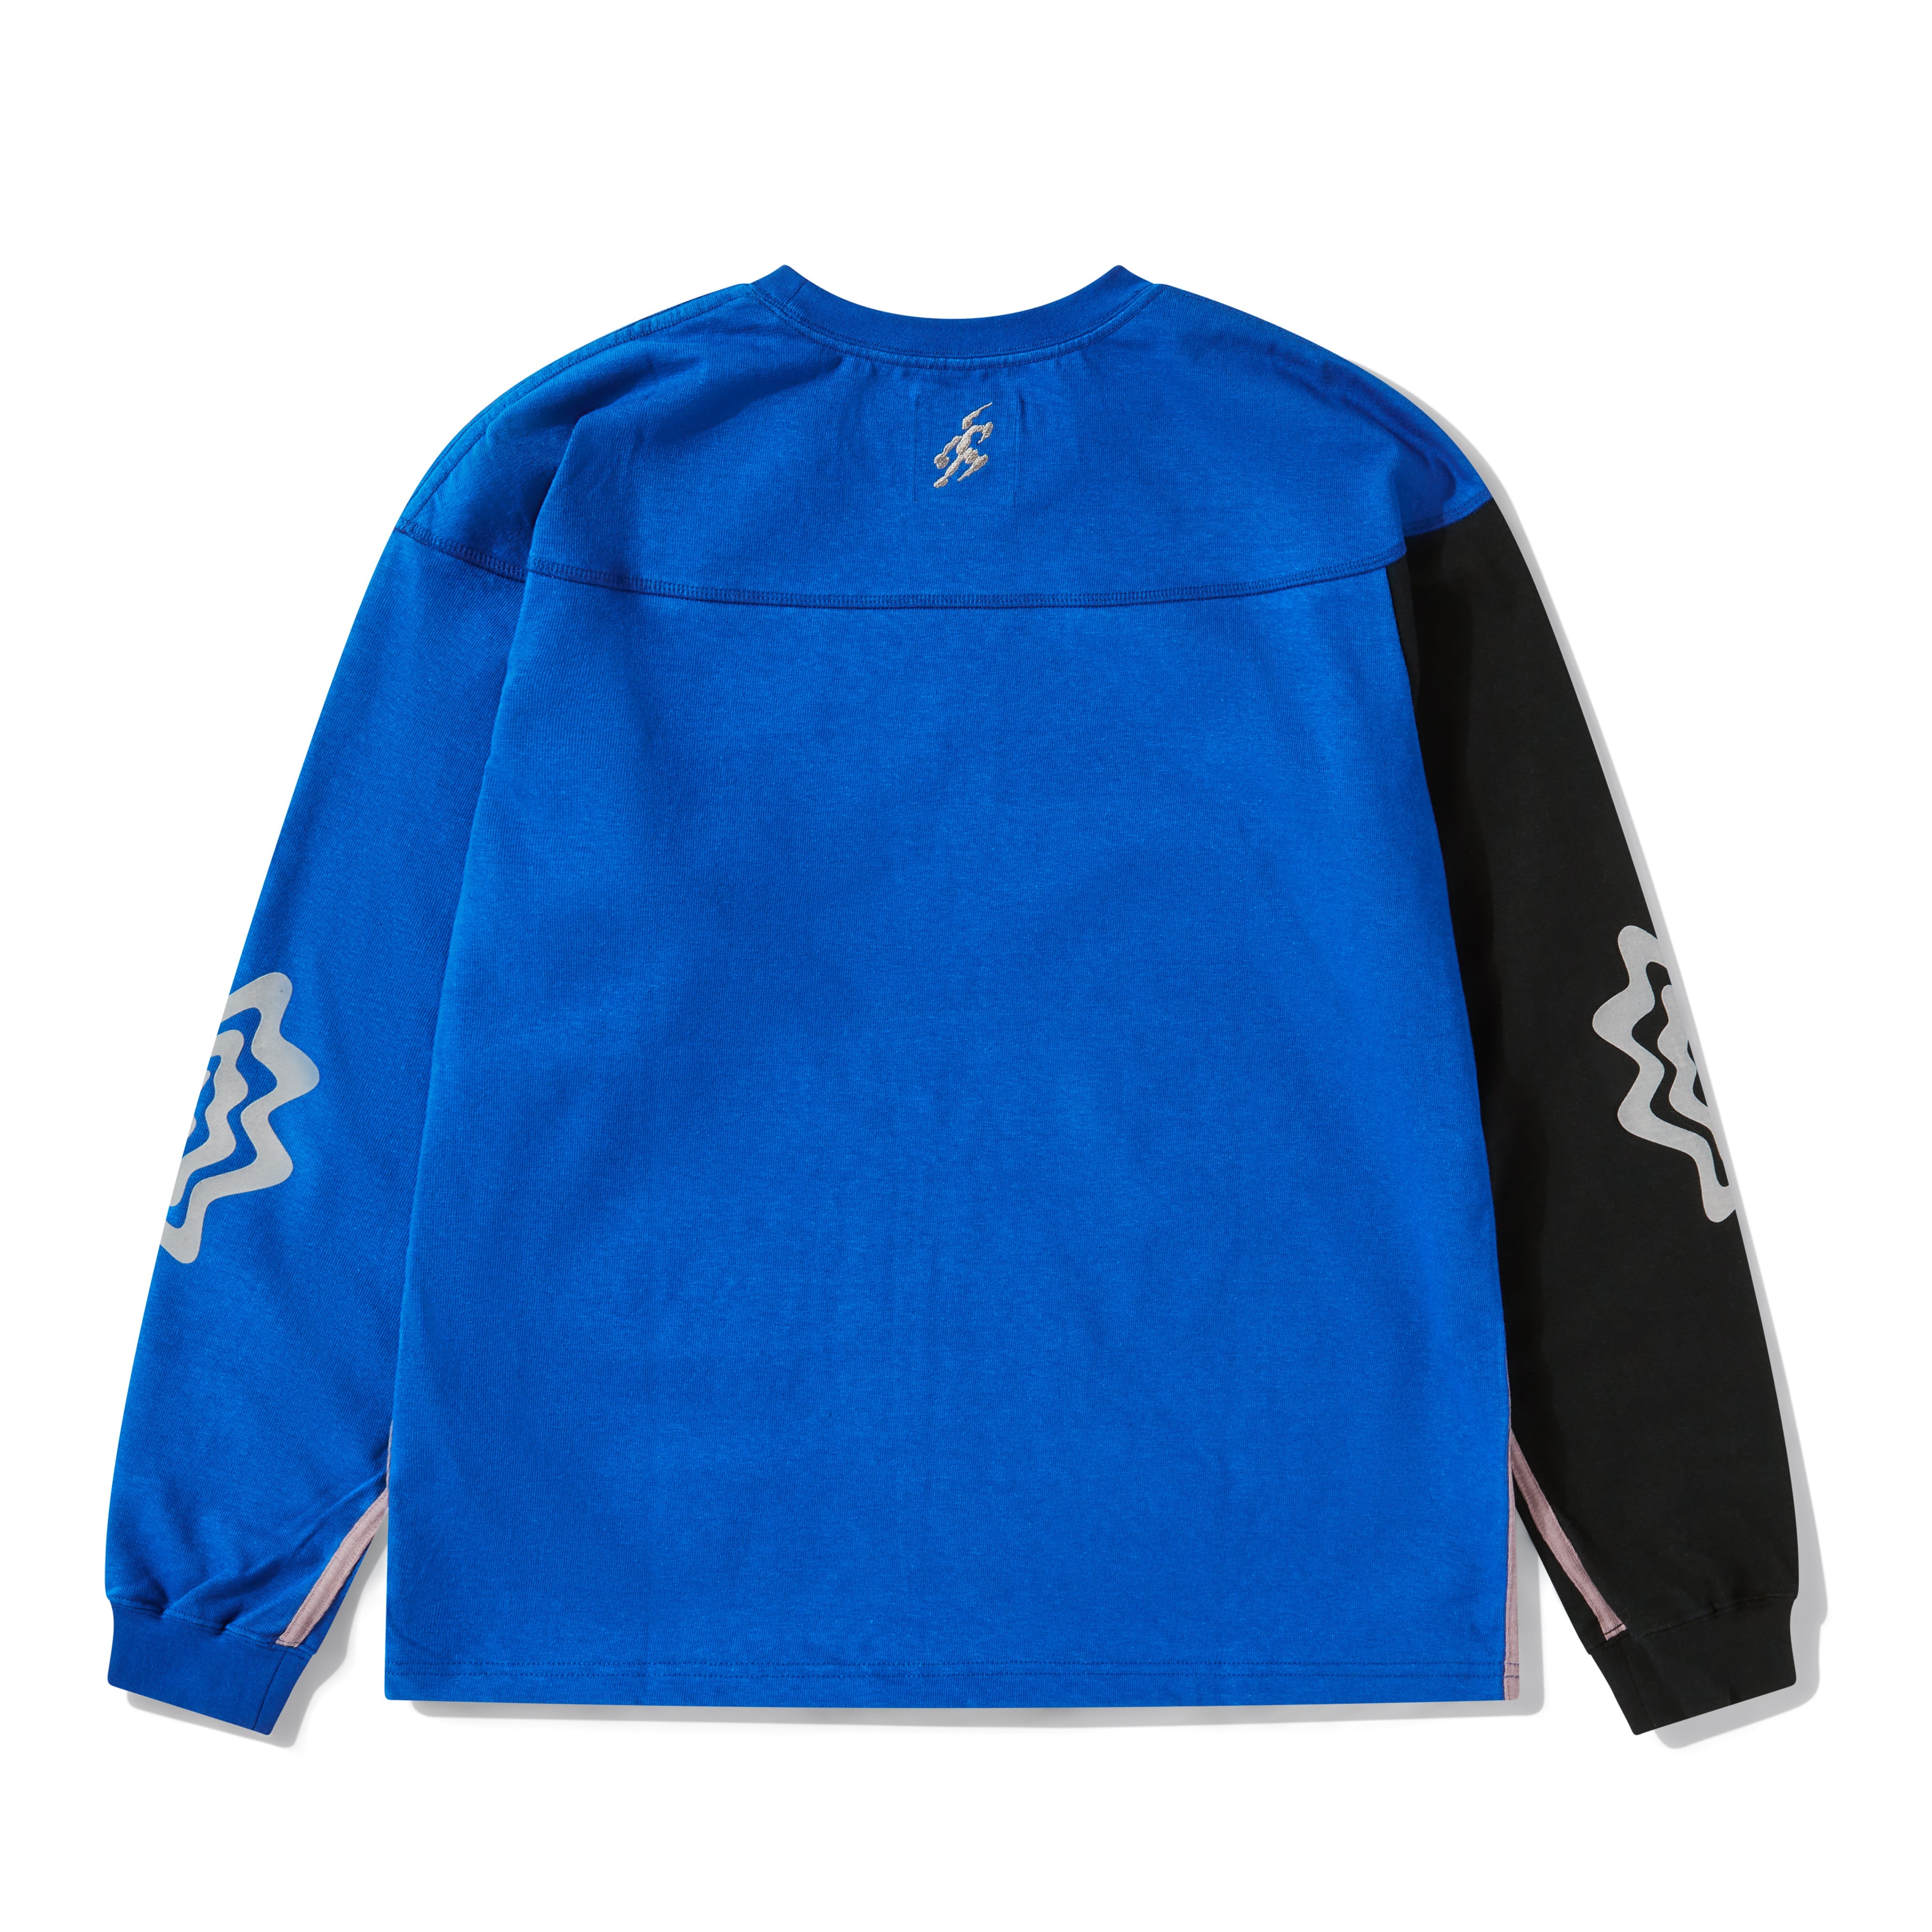 Asics Novalis - Bixance Long Sleeve T-Shirt - (Asics Blue / Obsidian Black)